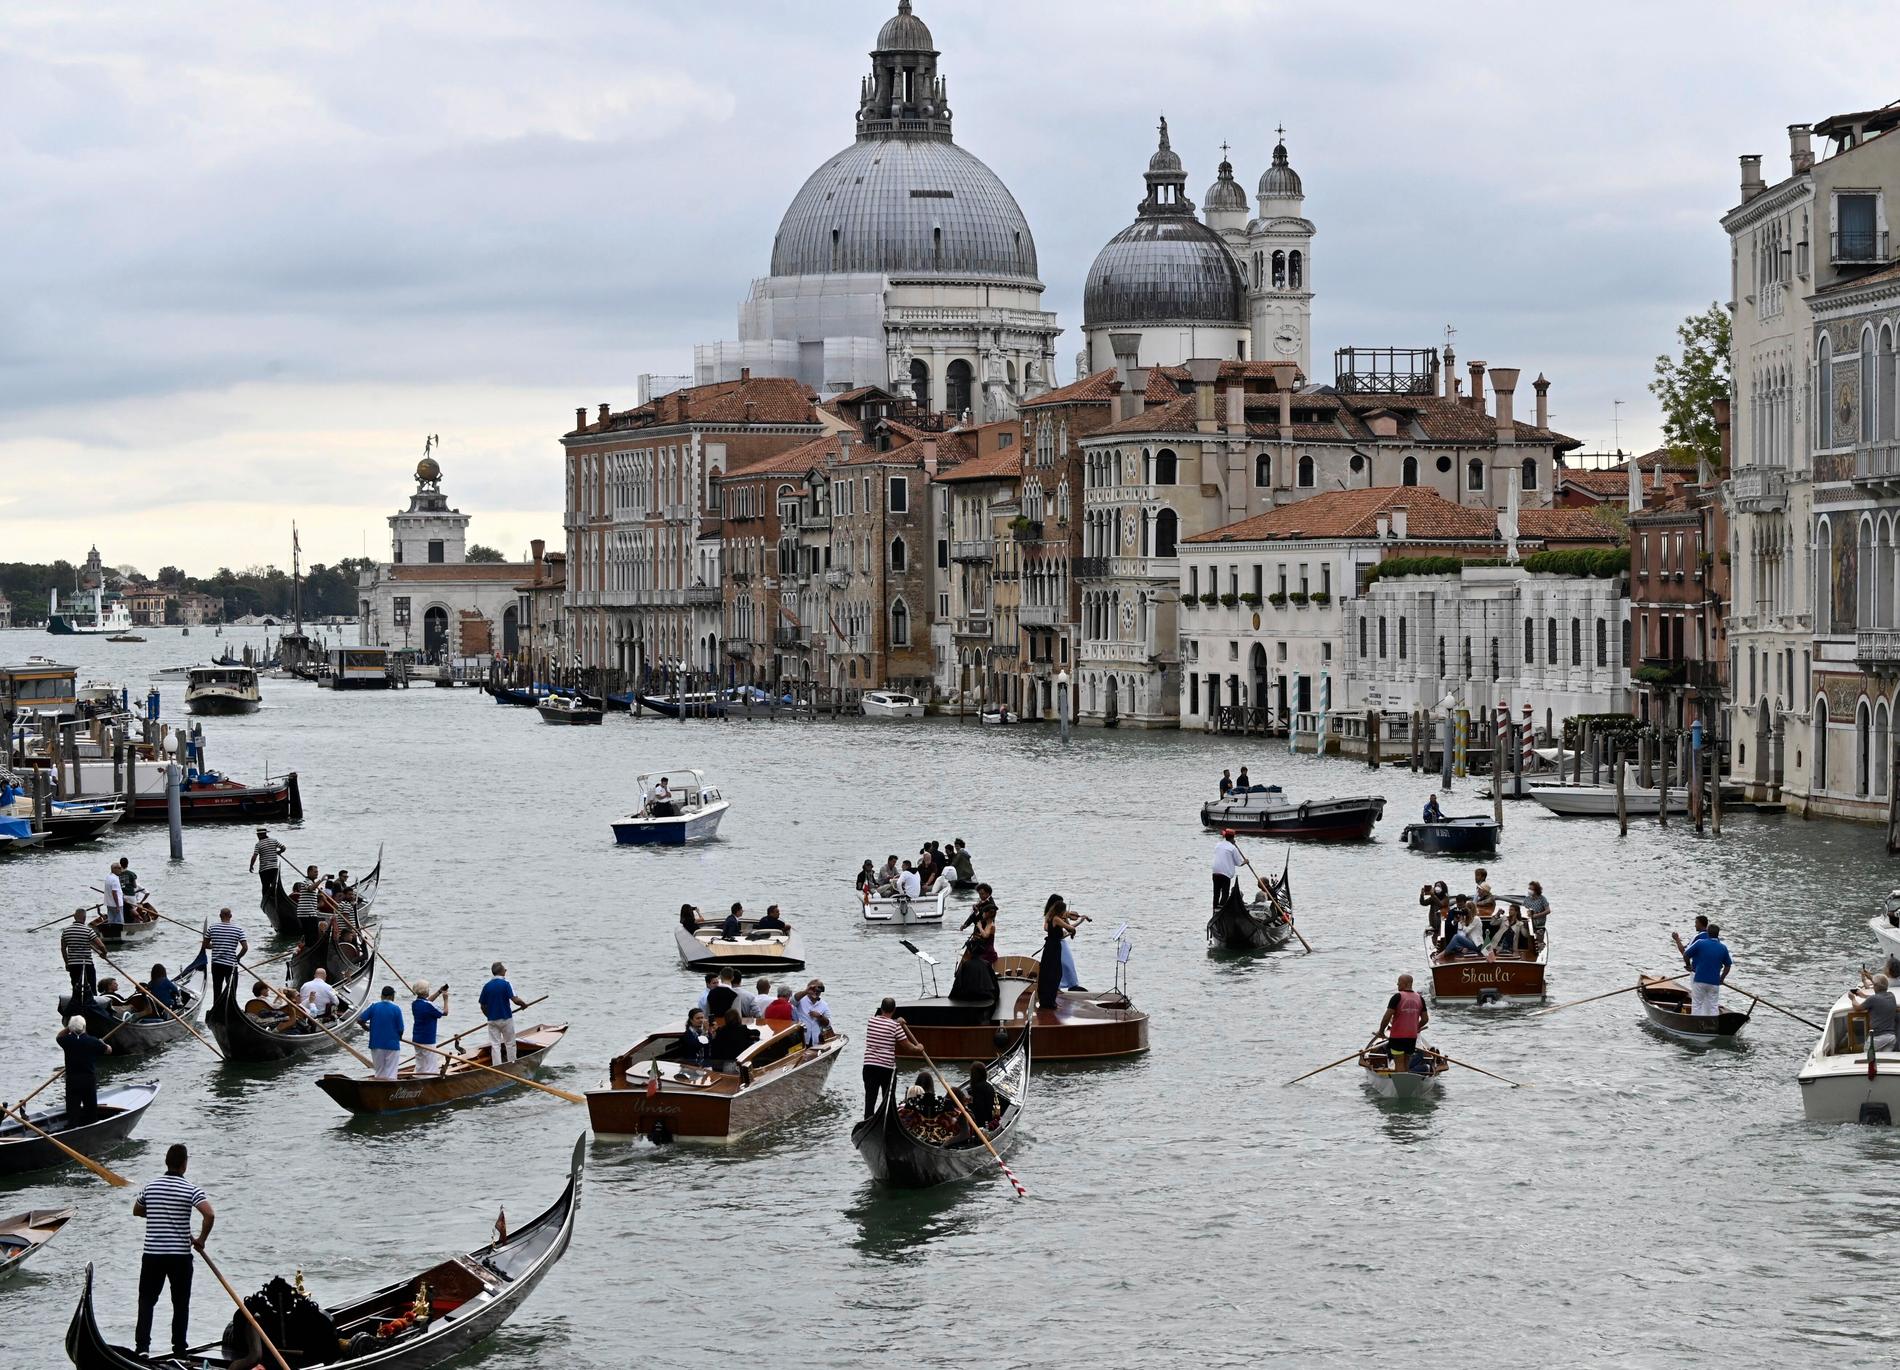 Bara en vecka tidigare hoppade en man i och simmade i Canal grande – en av Venedigs många kanaler. 